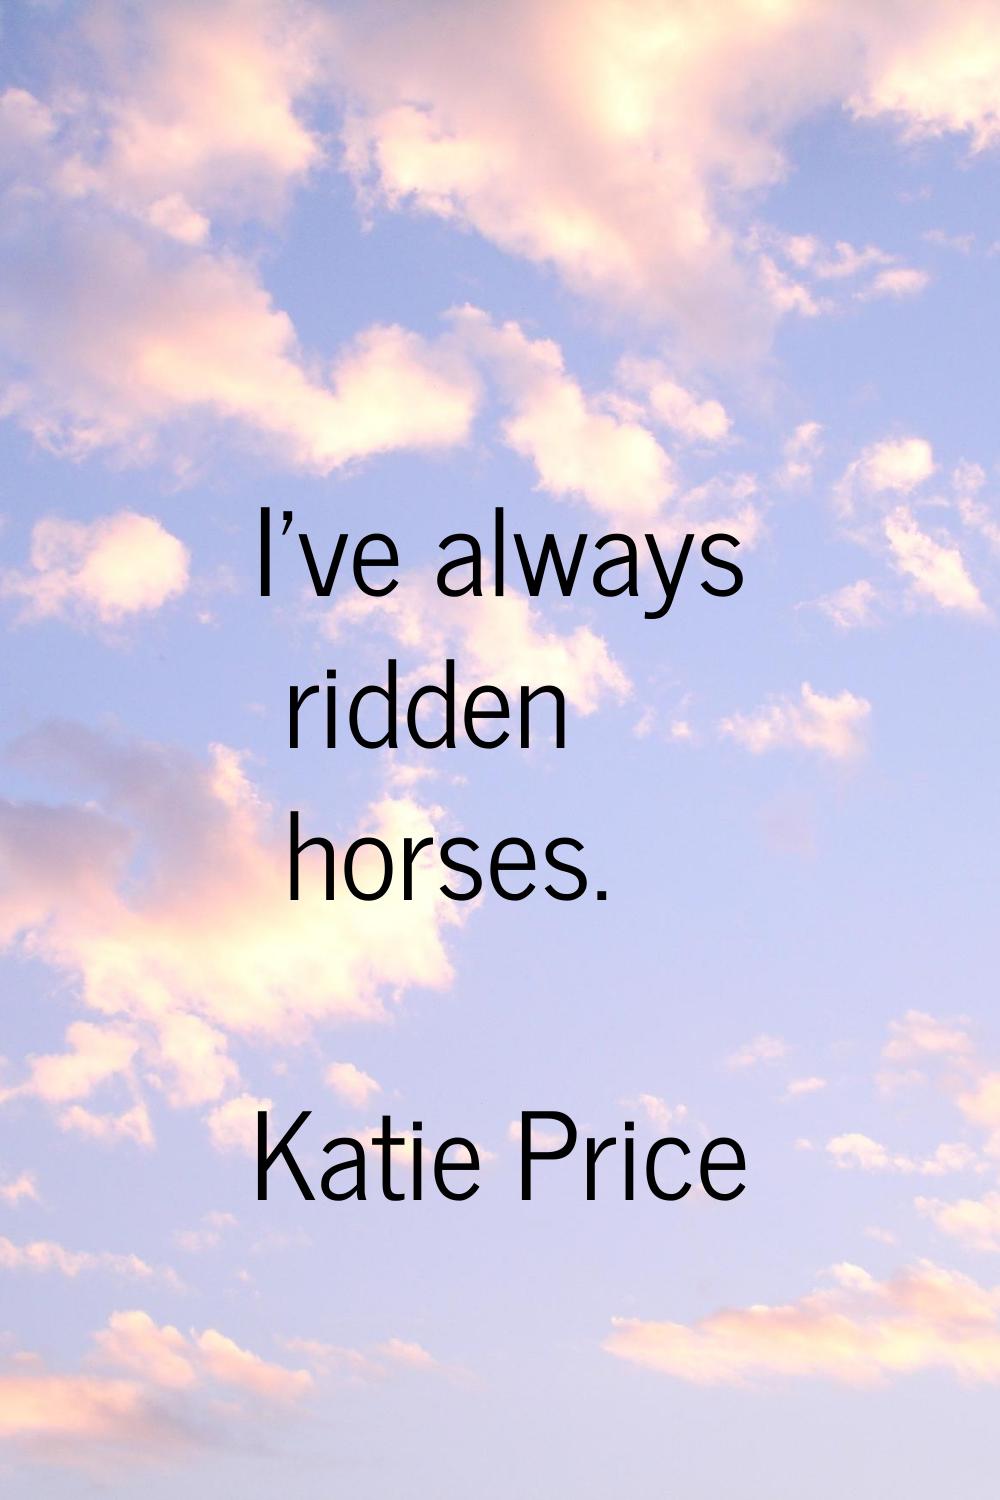 I've always ridden horses.